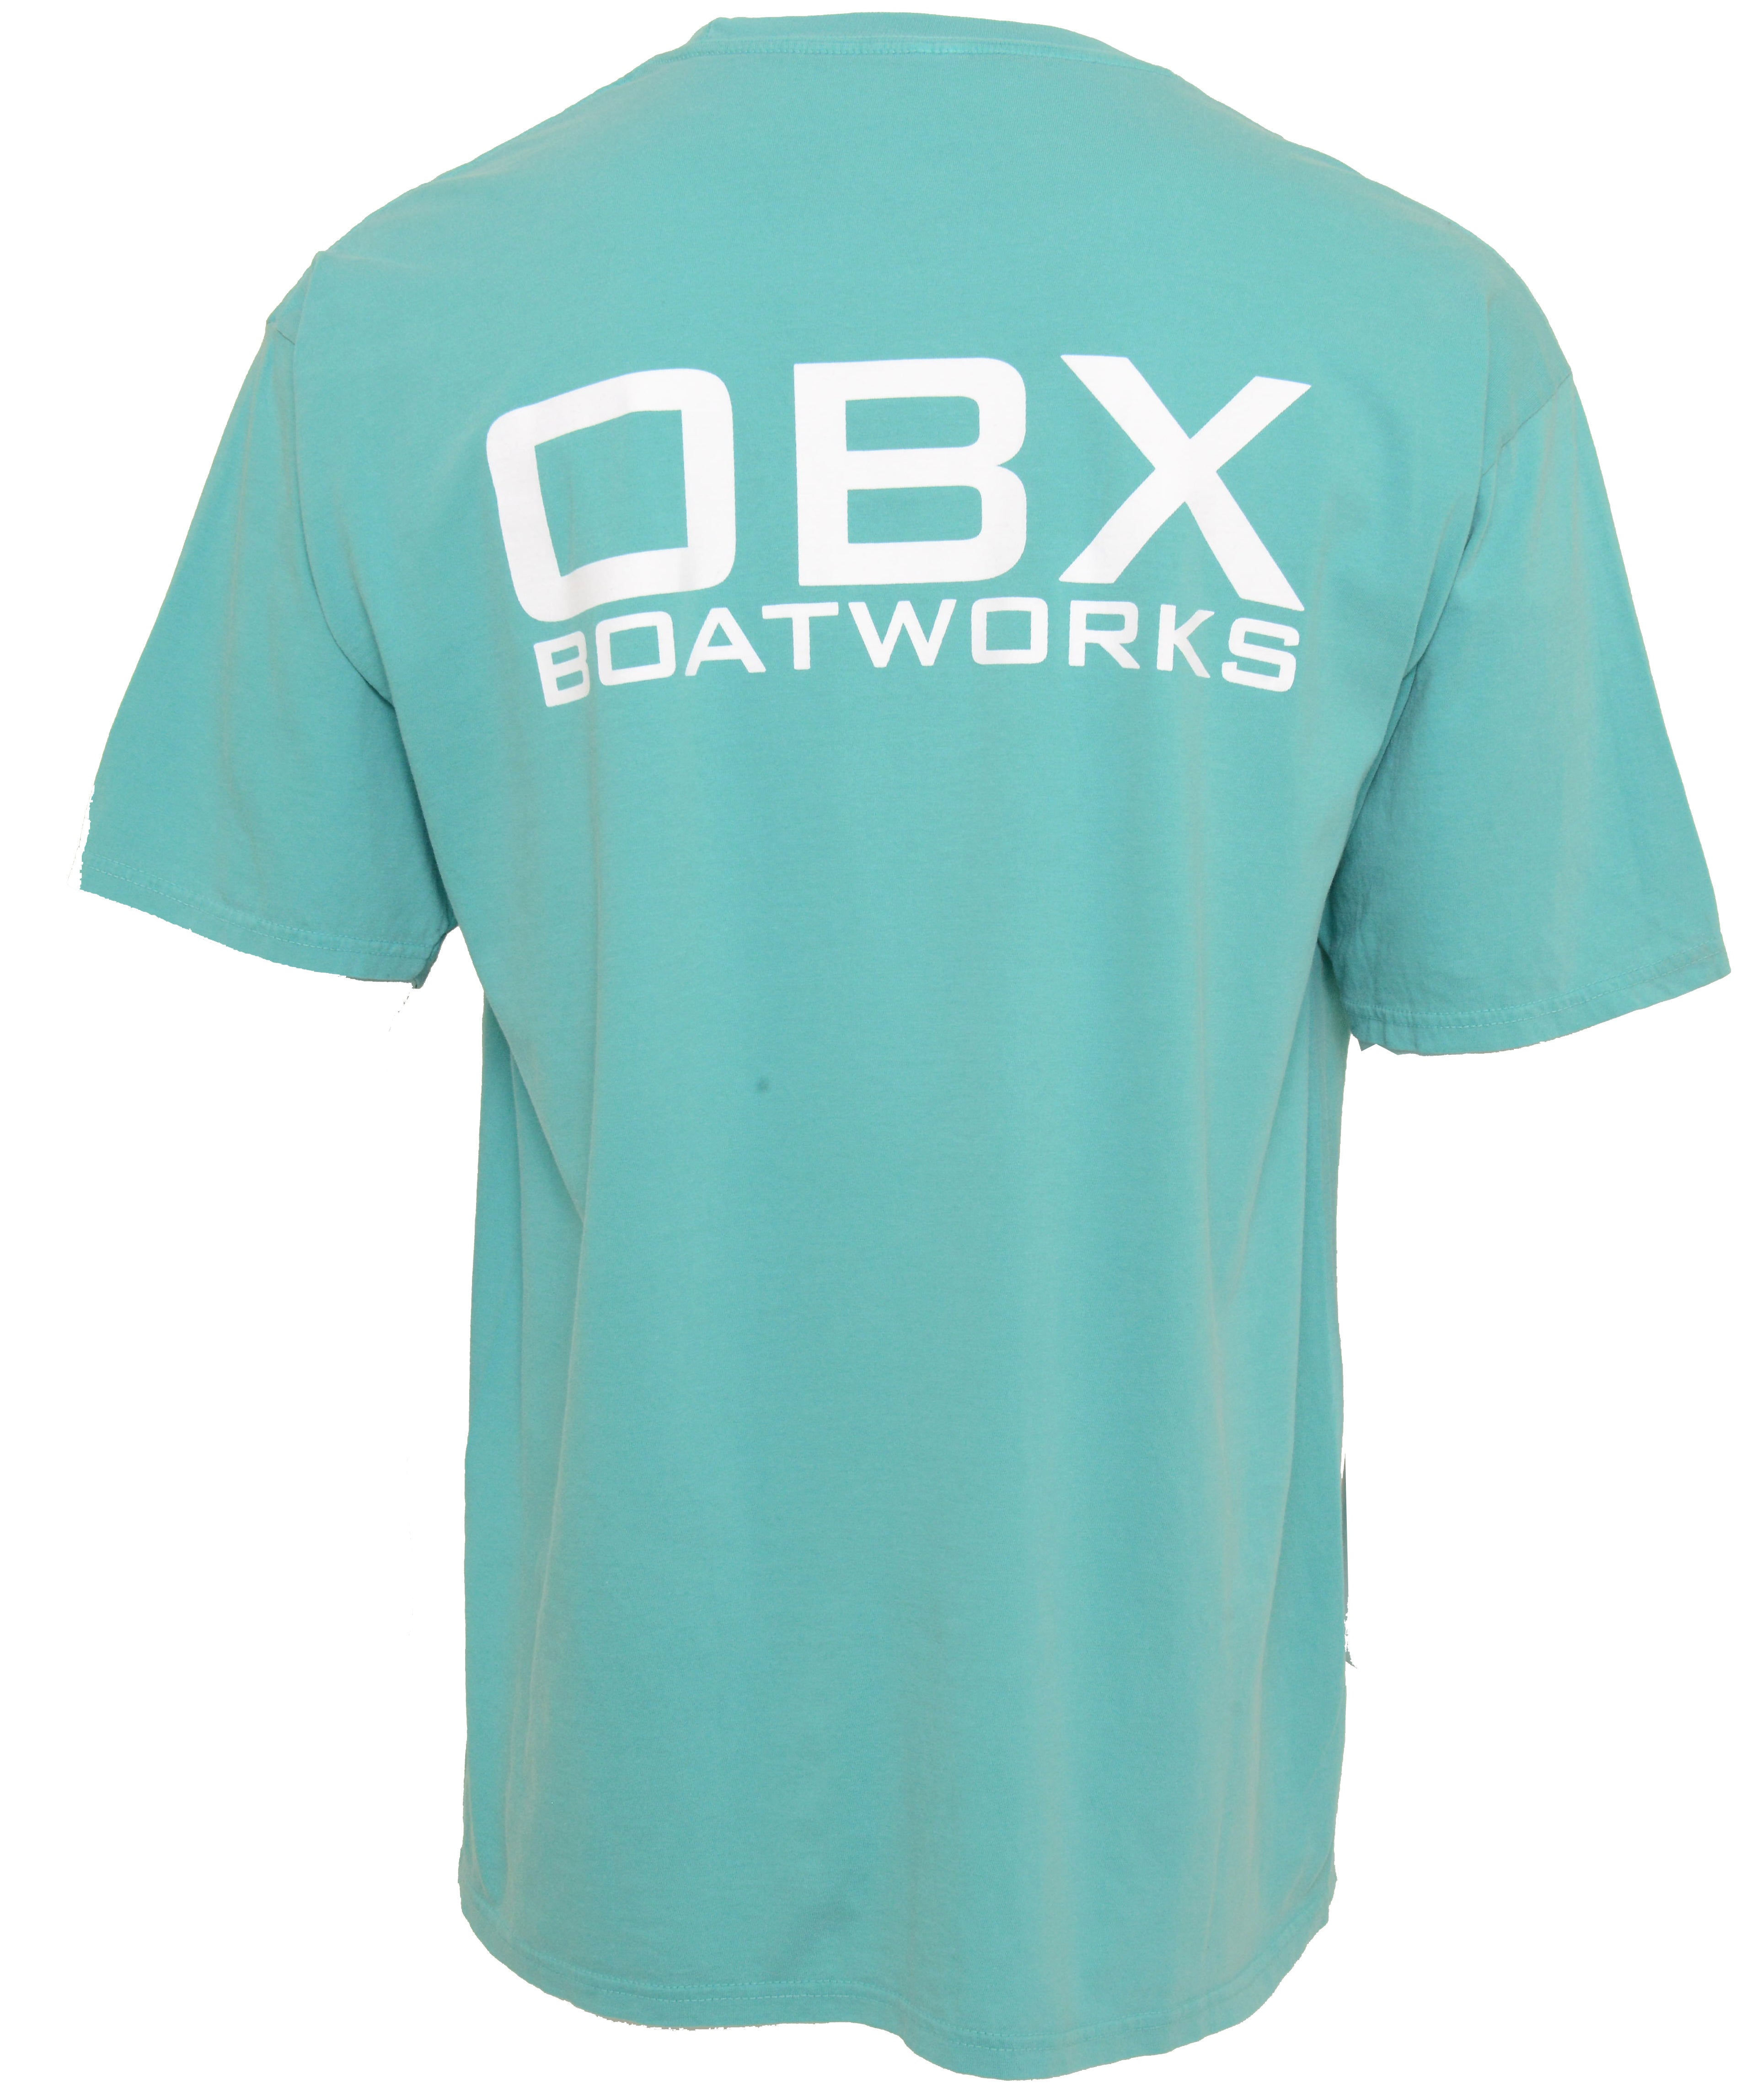 OBX Boatworks Short Sleeve Shirt